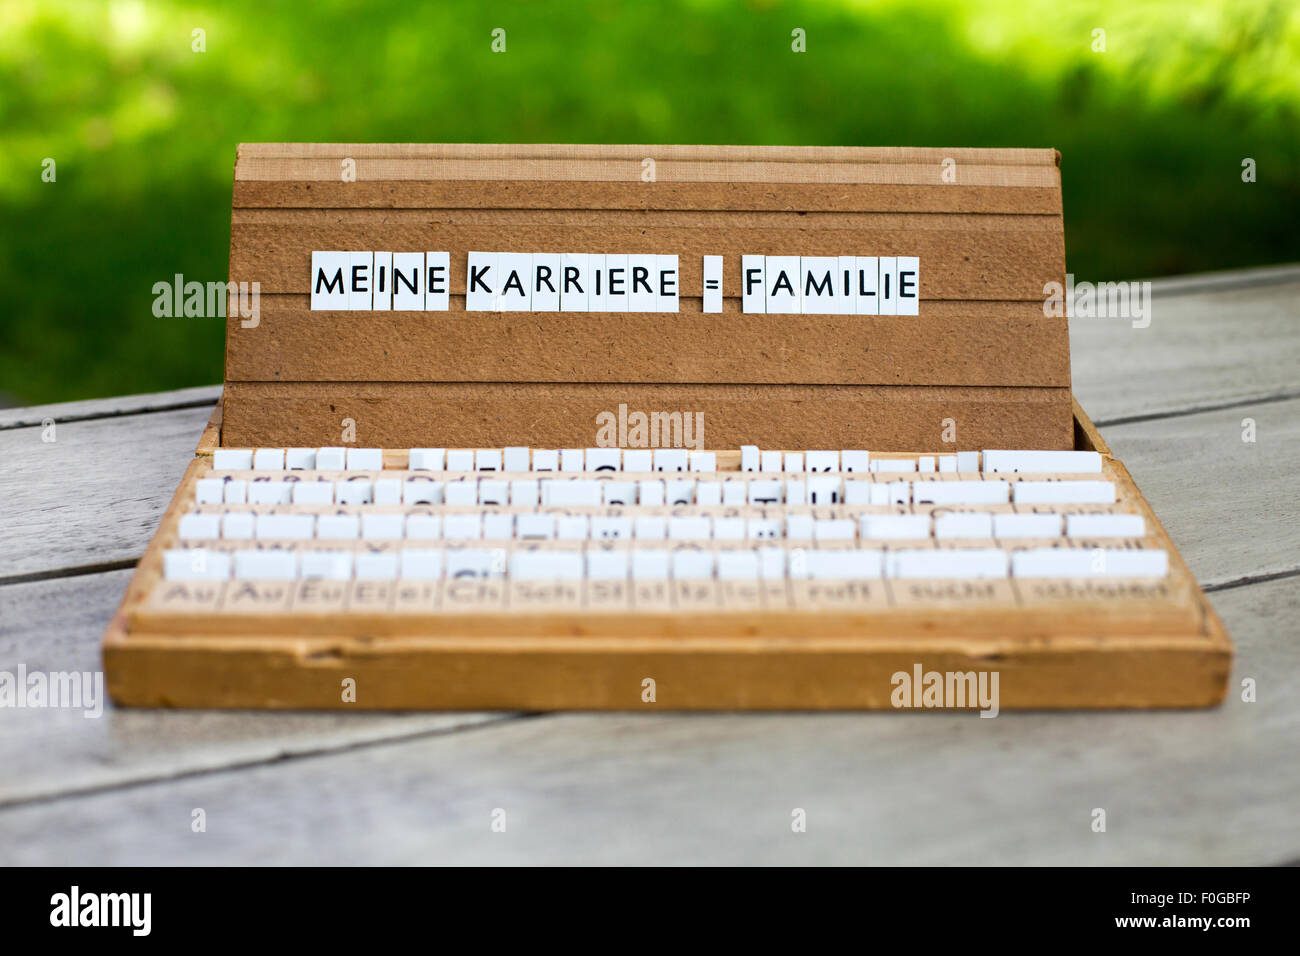 Une boîte aux lettres avec le texte allemand : 'Meine Karriere =Familie' (ma carrière  = famille) Banque D'Images